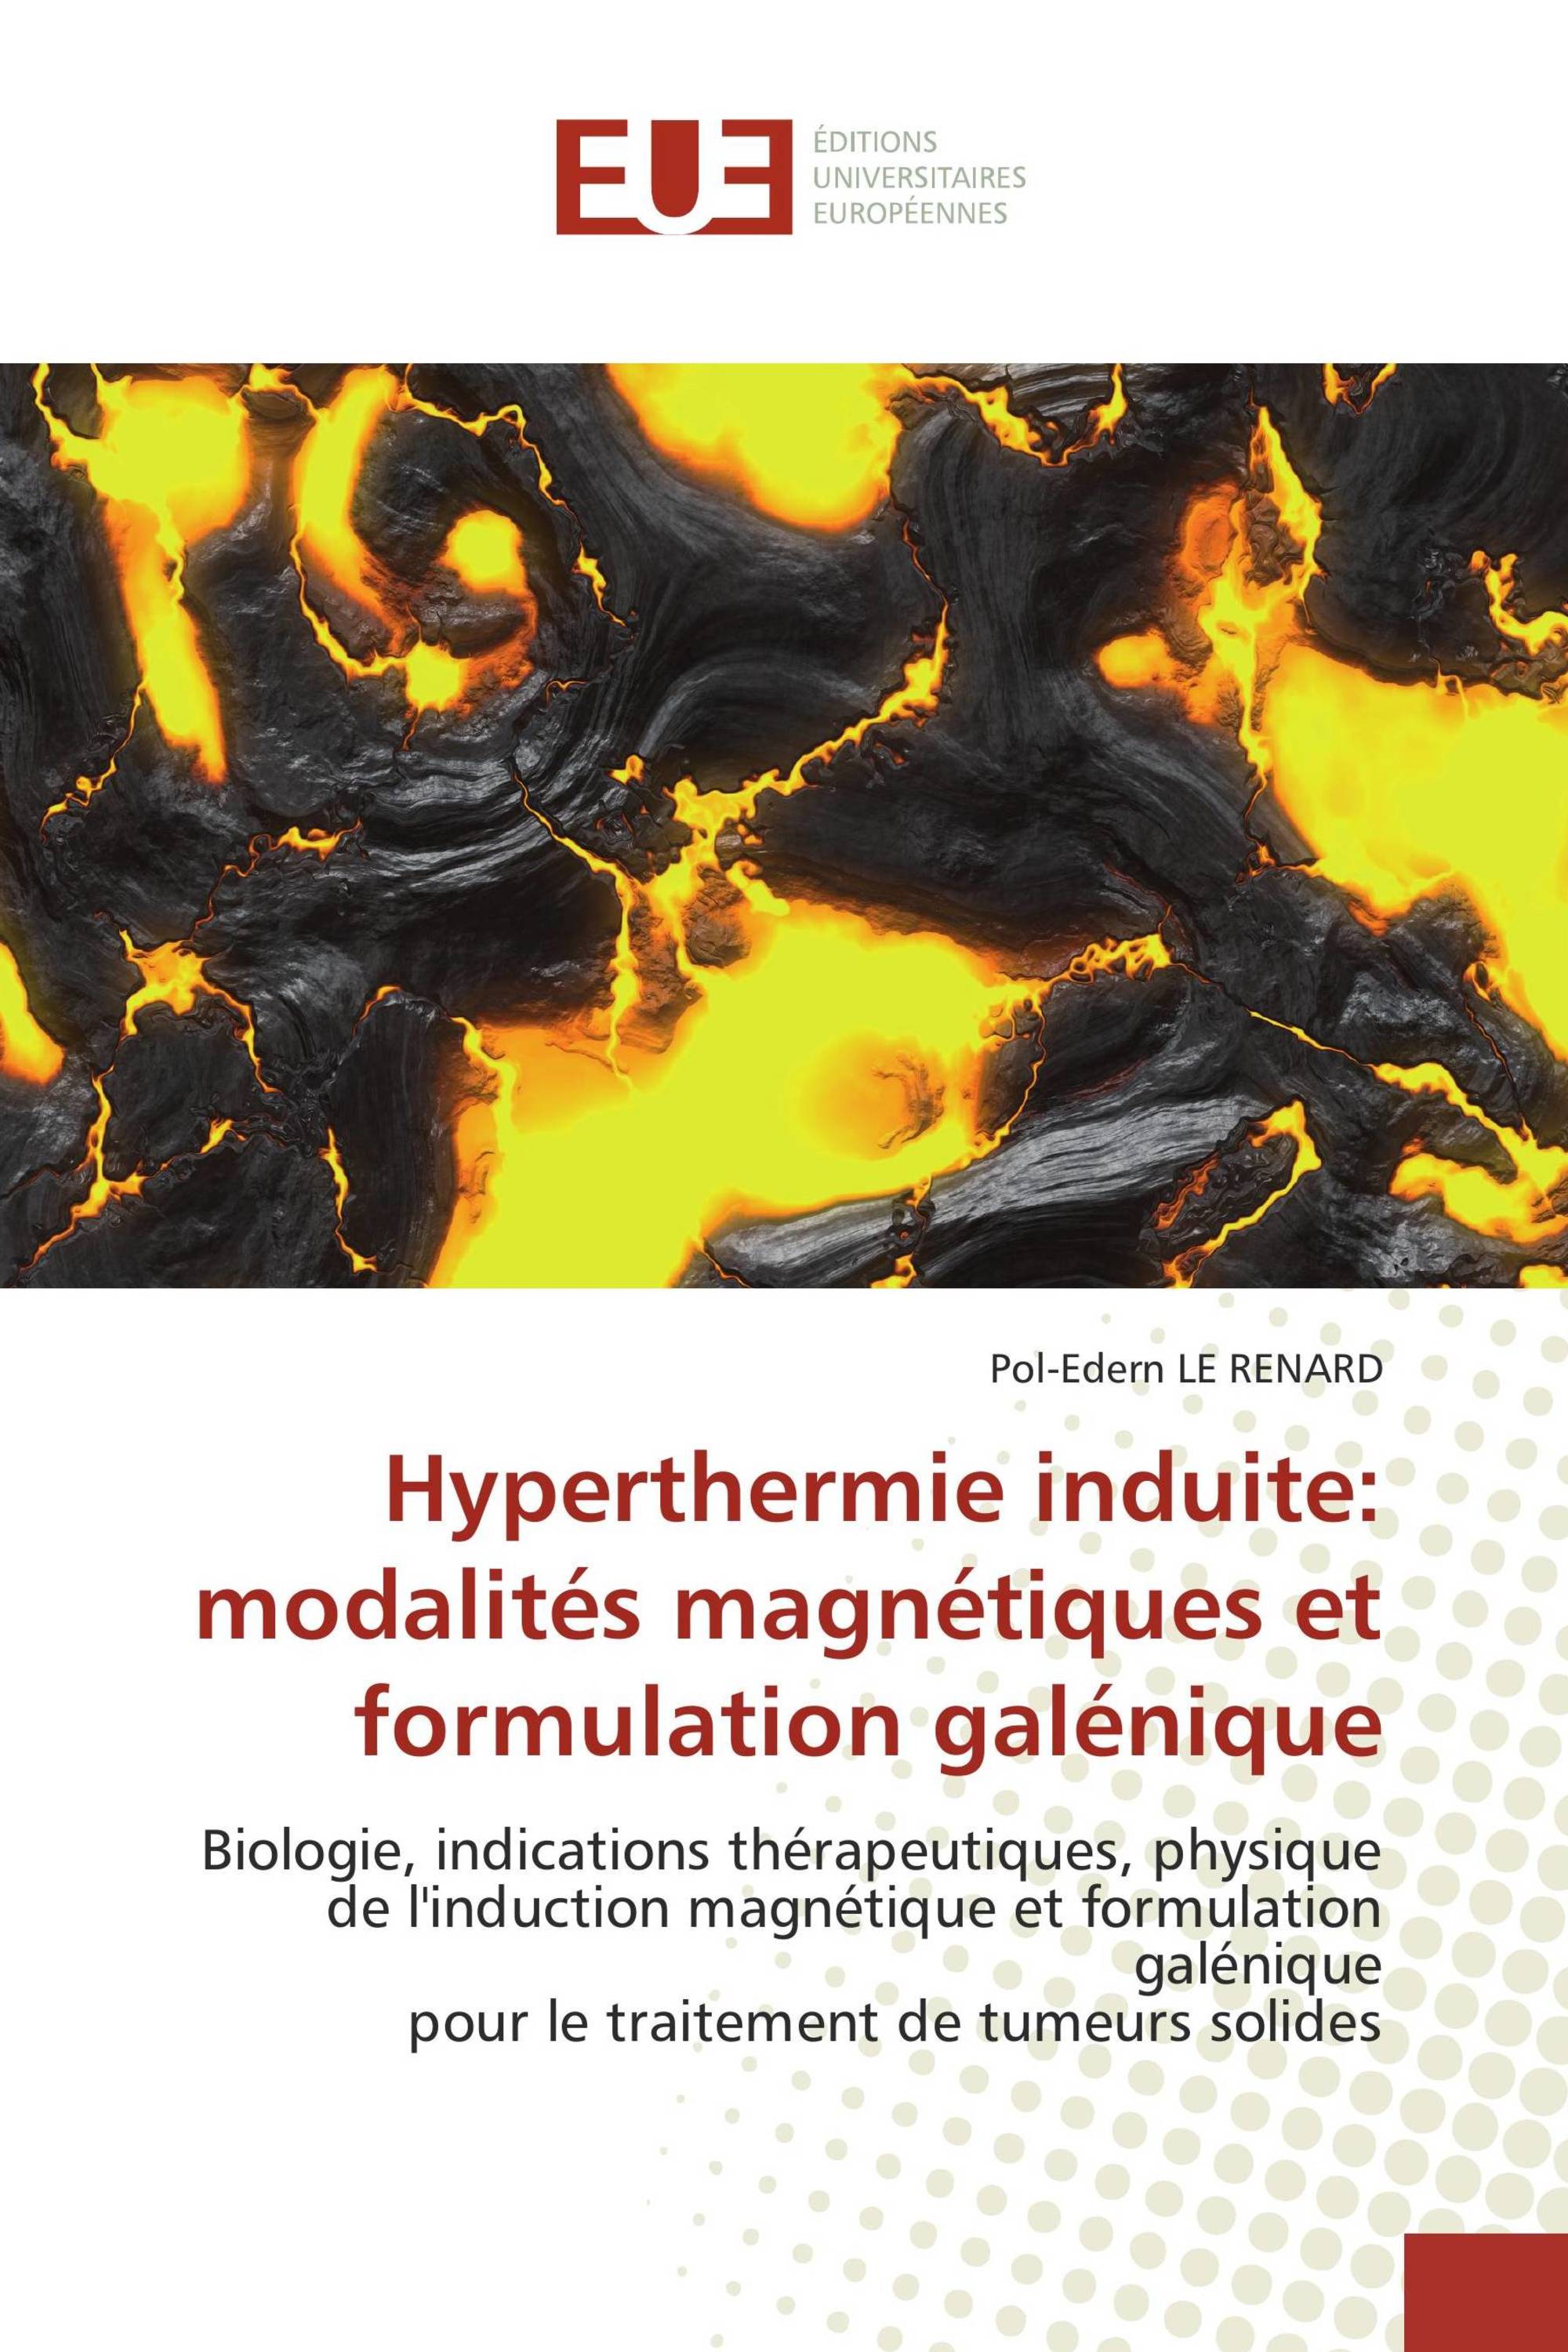 Hyperthermie induite: modalités magnétiques et formulation galénique